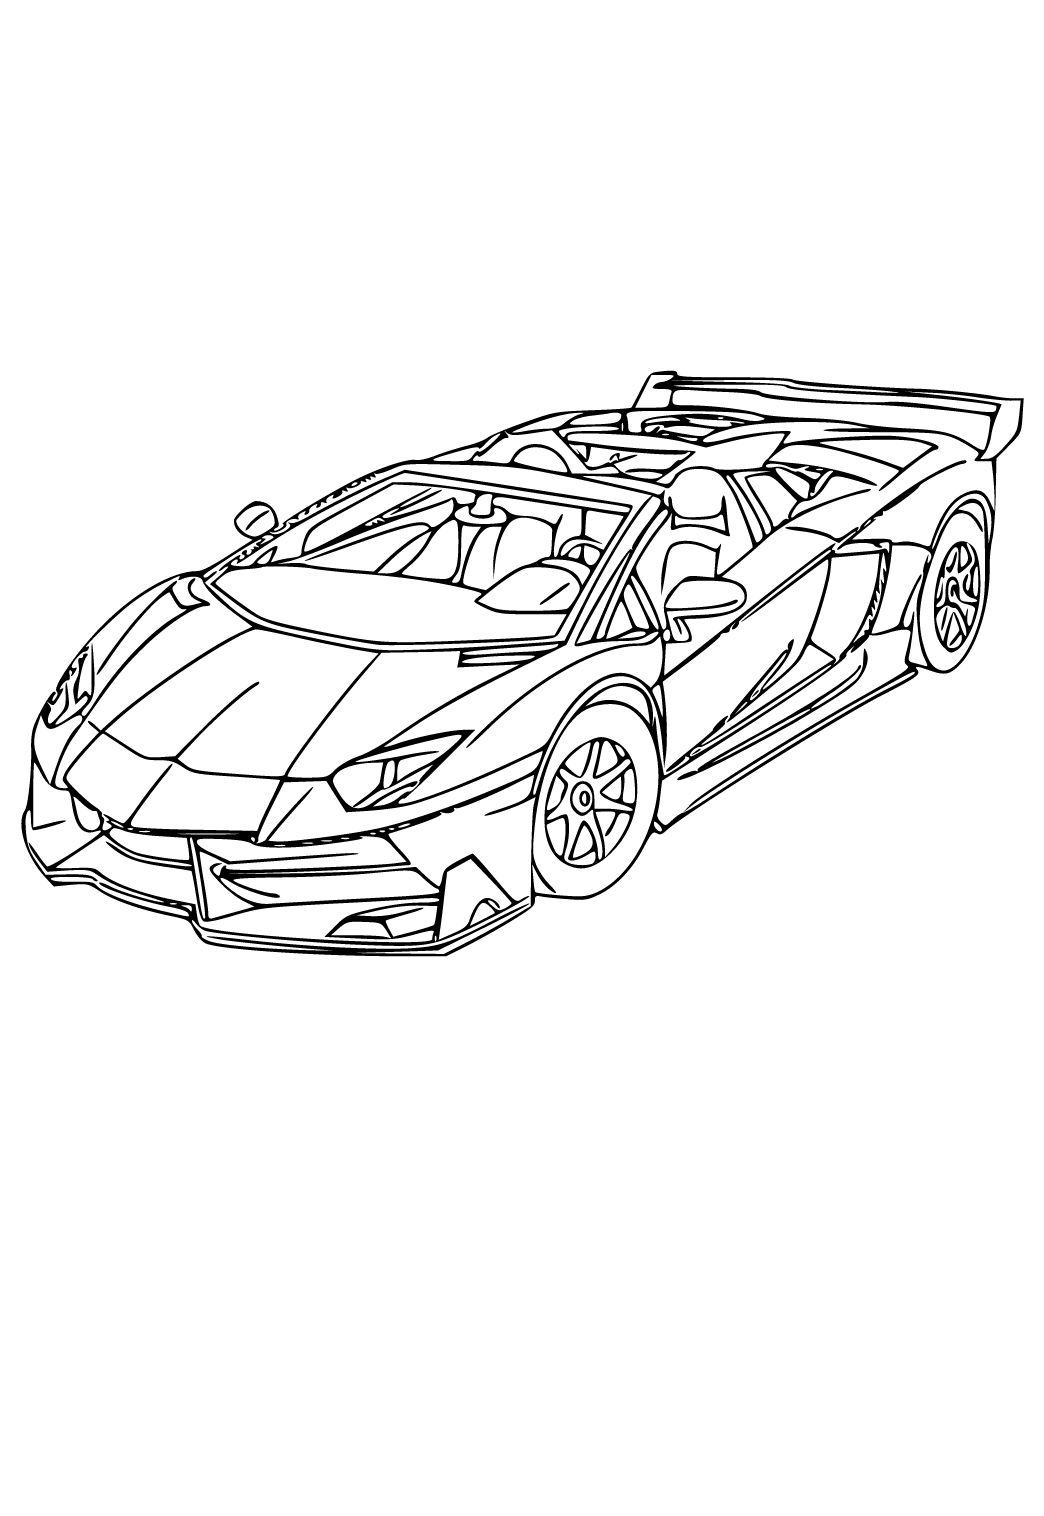 Bạn là một fan hâm mộ của Lamborghini? Hãy xem hình ảnh tranh tô màu miễn phí liên quan để khám phá thêm những sắc màu và kiểu dáng độc đáo của các mẫu xe thể thao này.